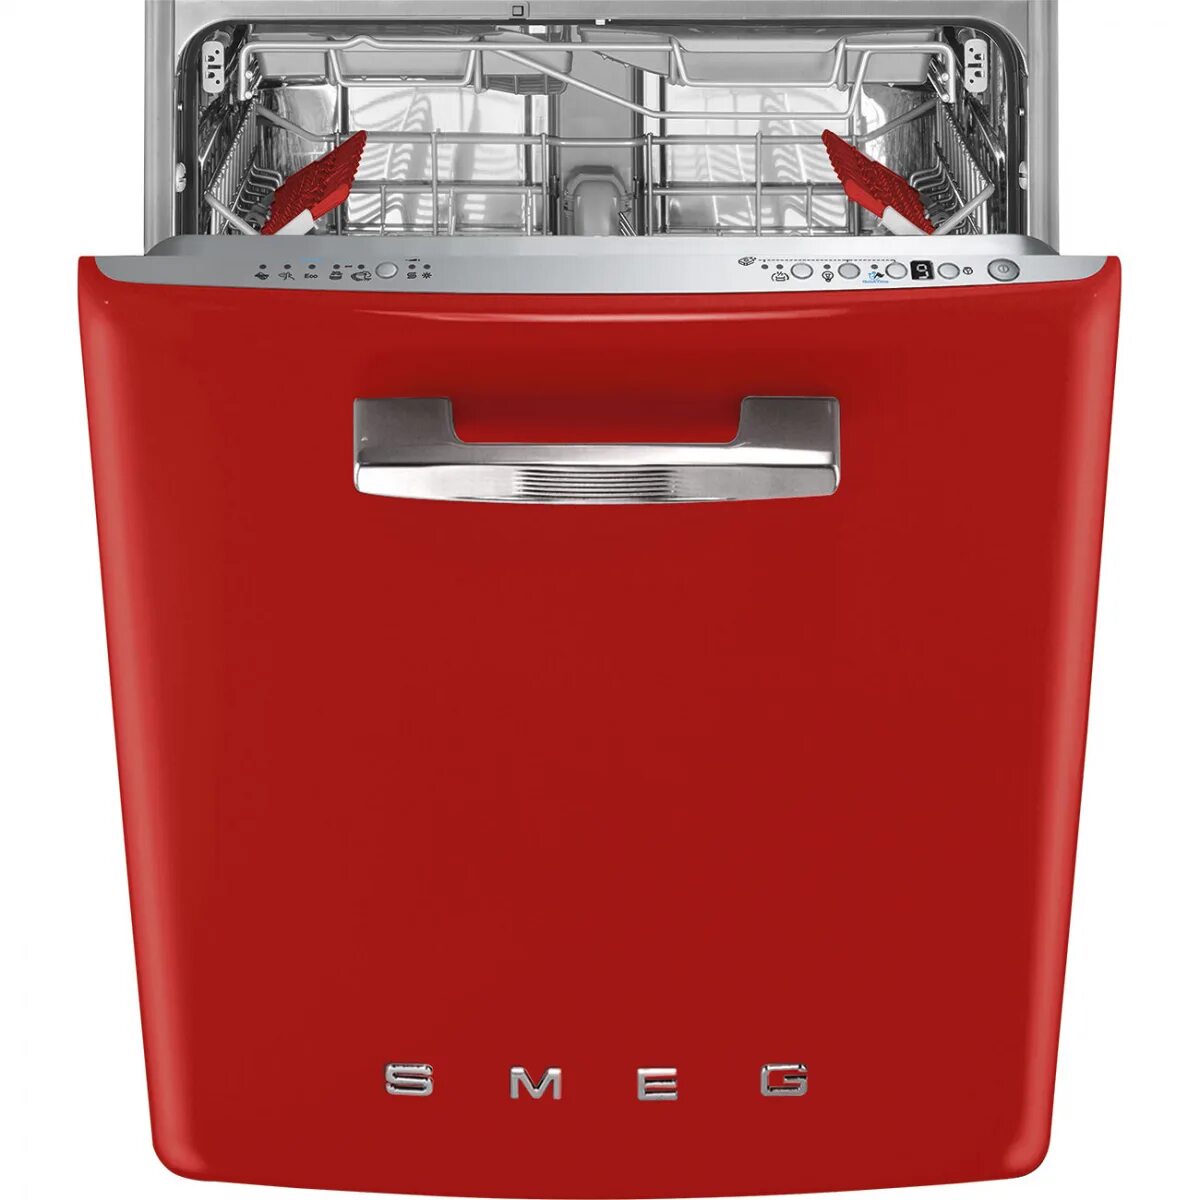 Посудомоечные машины 3 комплекта. Посудомоечная машина Smeg st2fabr2. Посудомоечная машина Smeg st2fabcr. Смег посудомоечная машина встраиваемая. Посудомоечная машина Смег 45 см встраиваемая.